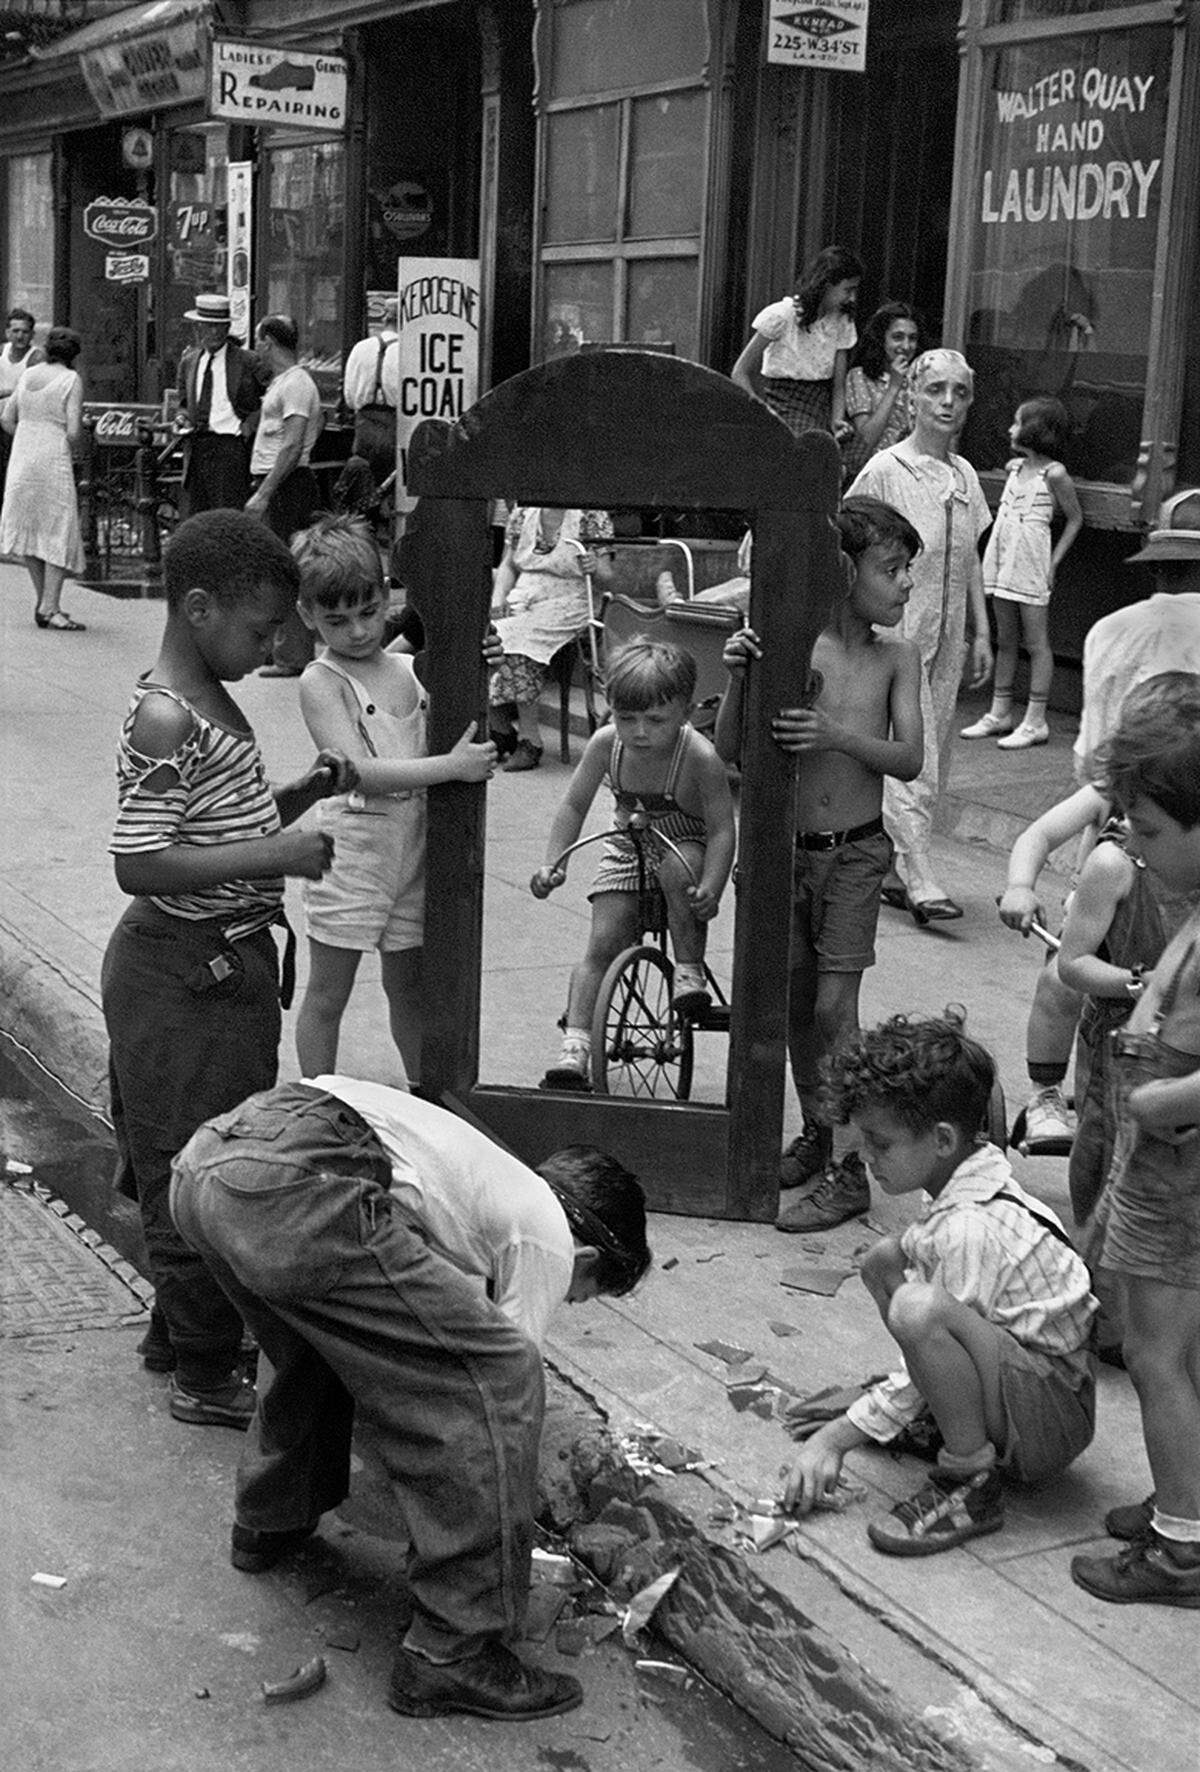 Ihr großes Thema waren die Kinder auf New Yorks Straßen. Levitt zeigte sie aber nie als Opfer, sondern meist spielend, wie sie sich so der Stadt bemächtigten mit einfachsten Mitteln. Helen Levitt: New York, 1940